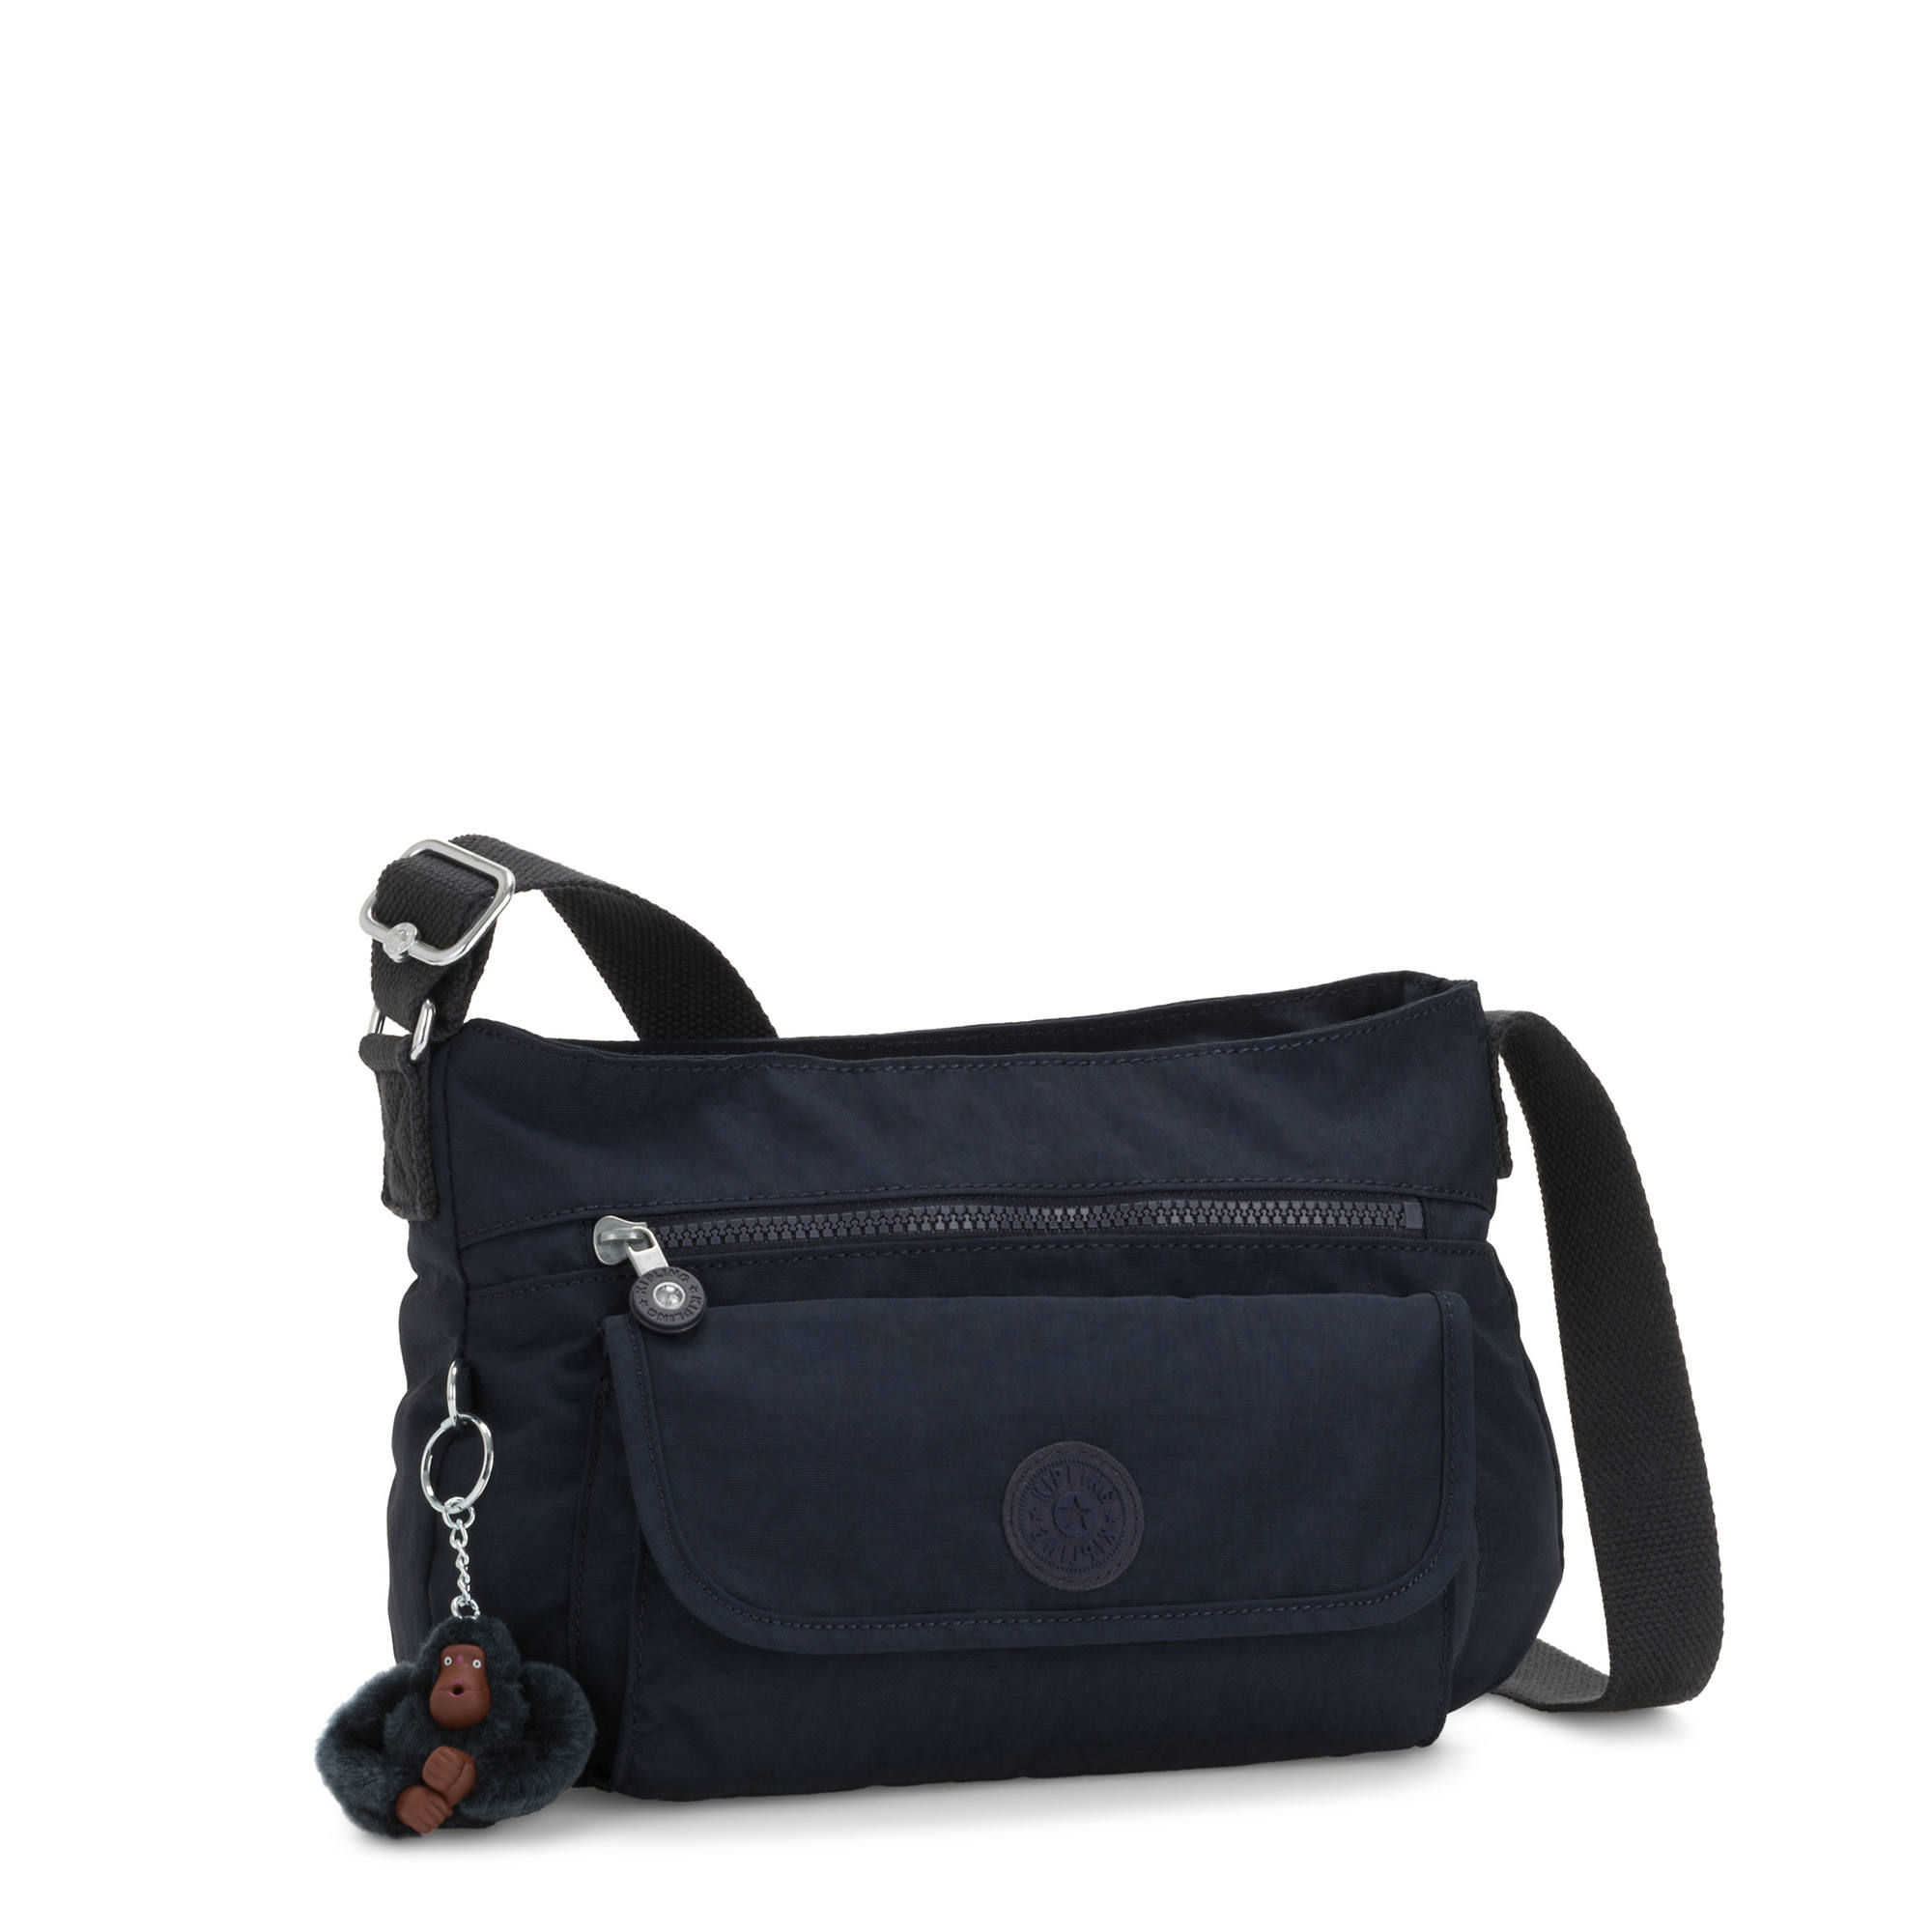 Kipling Syro Crossbody Bag | eBay